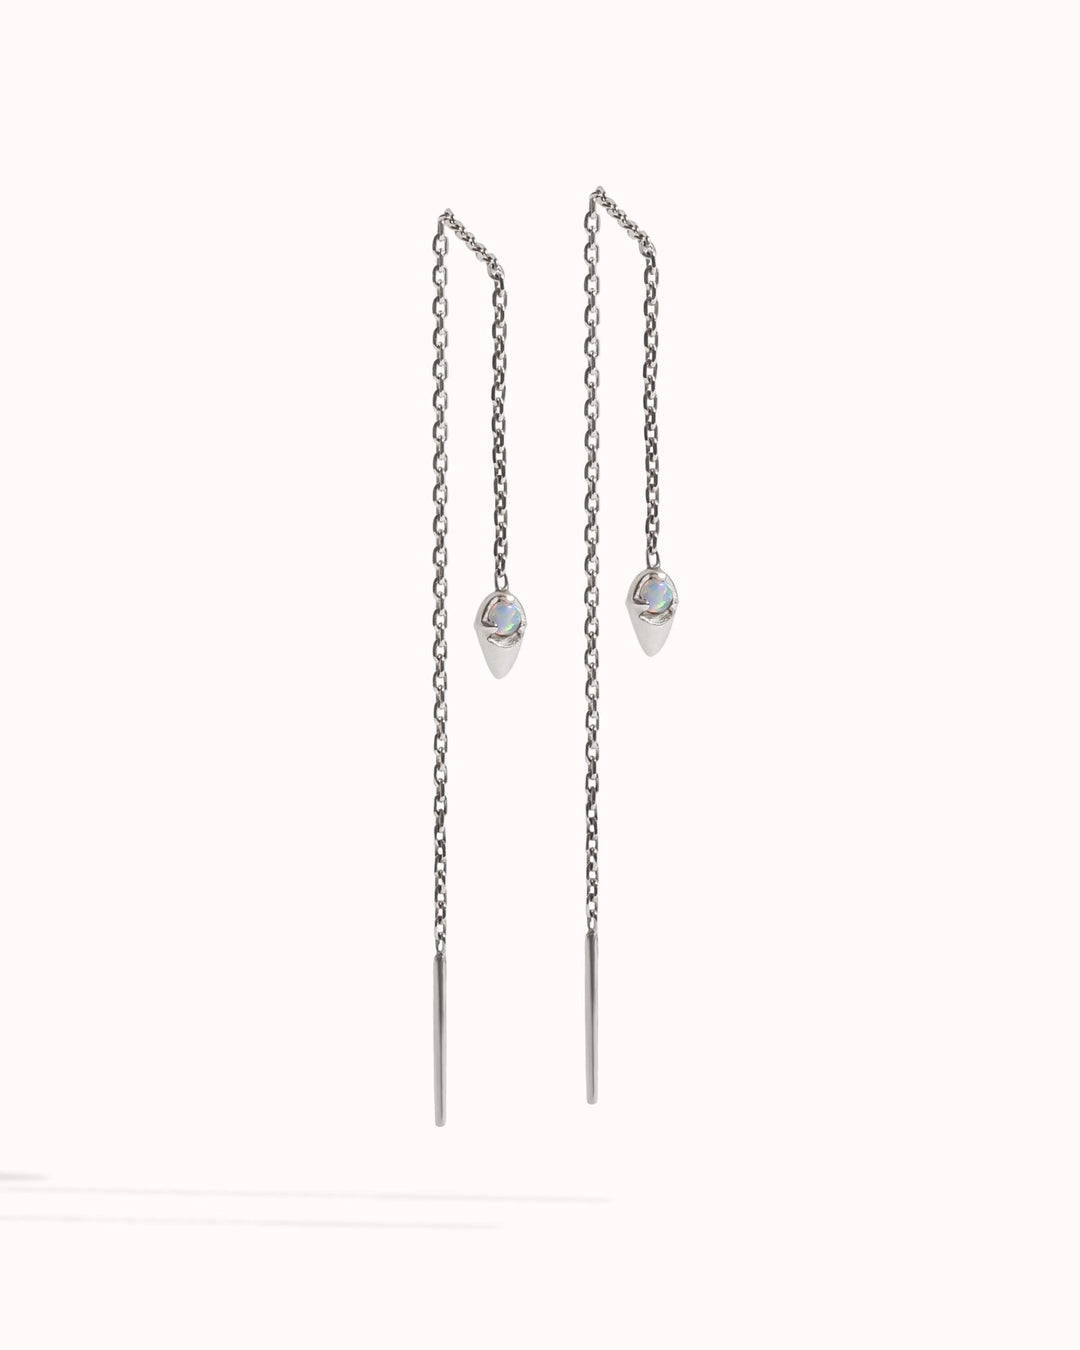 Adhara Threader Earrings - Revelmy